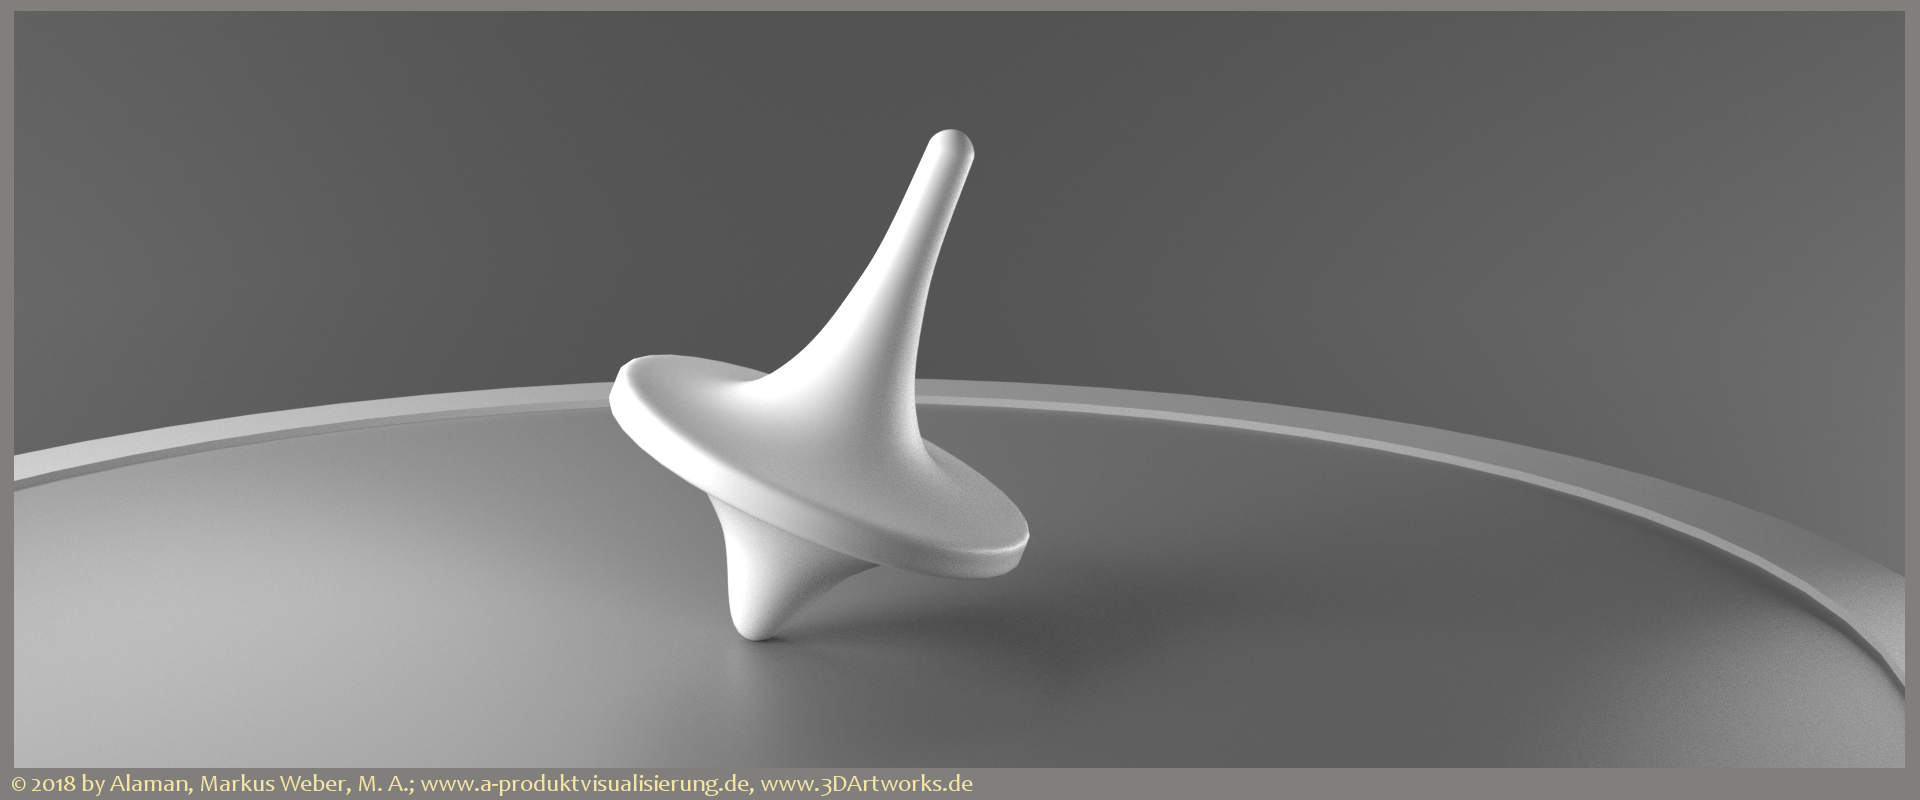 In Arbeit bei Alaman 3D Artworks: Produktvisualisierung, Hintergrundbild für a-produktvisualisierung.de.